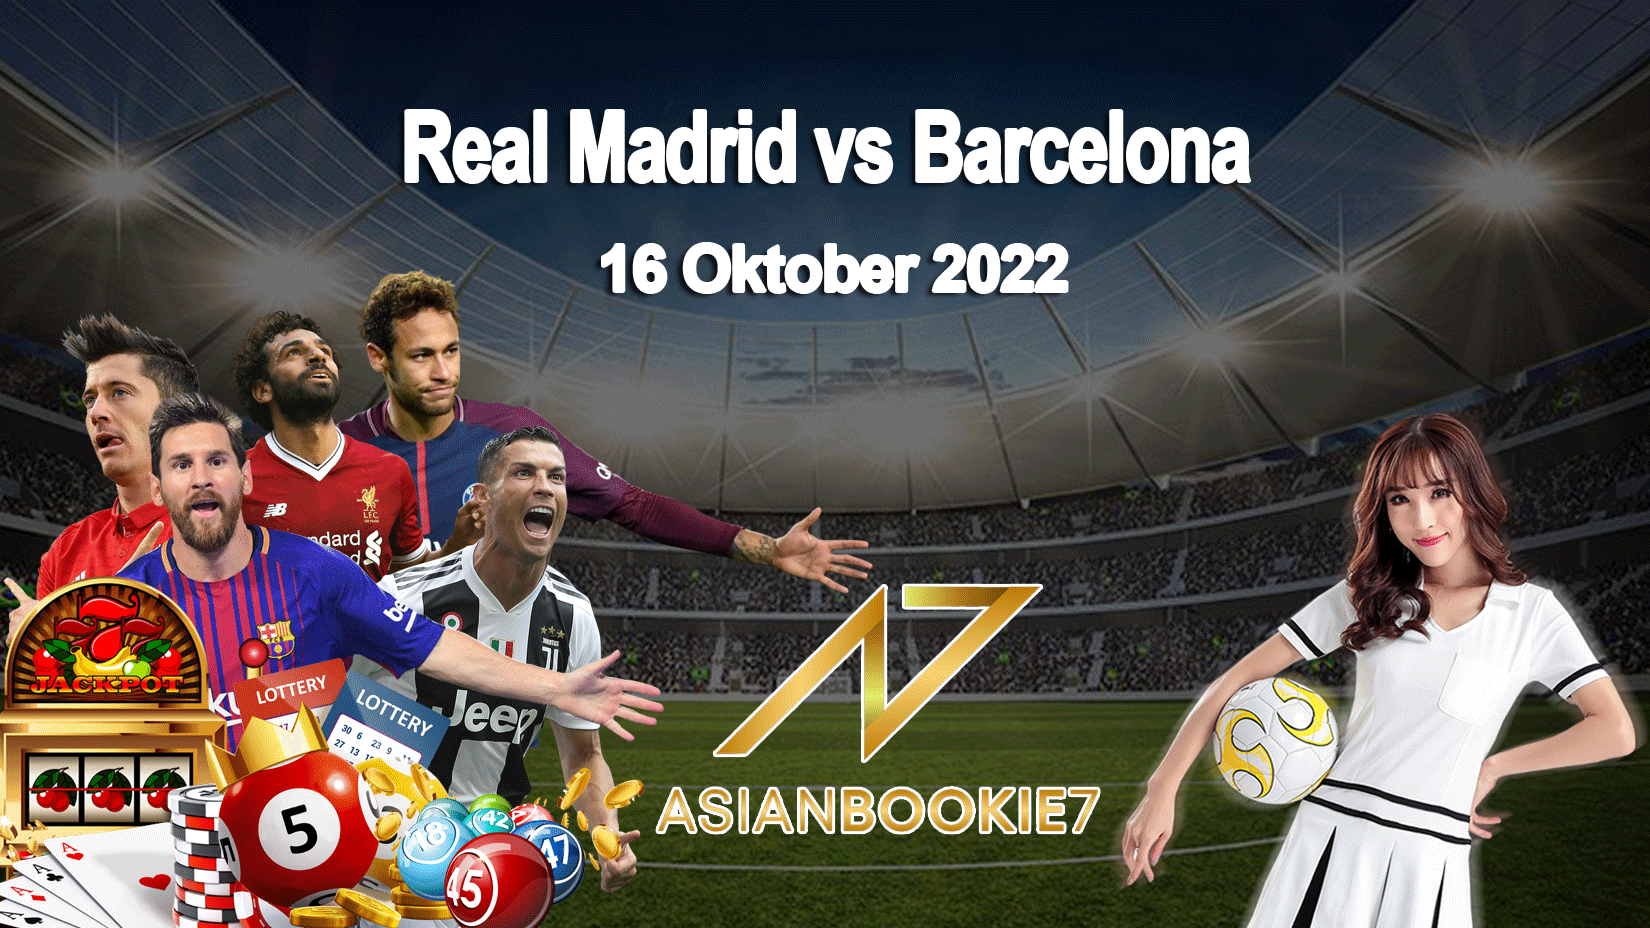 Prediksi Real Madrid vs Barcelona 16 Oktober 2022